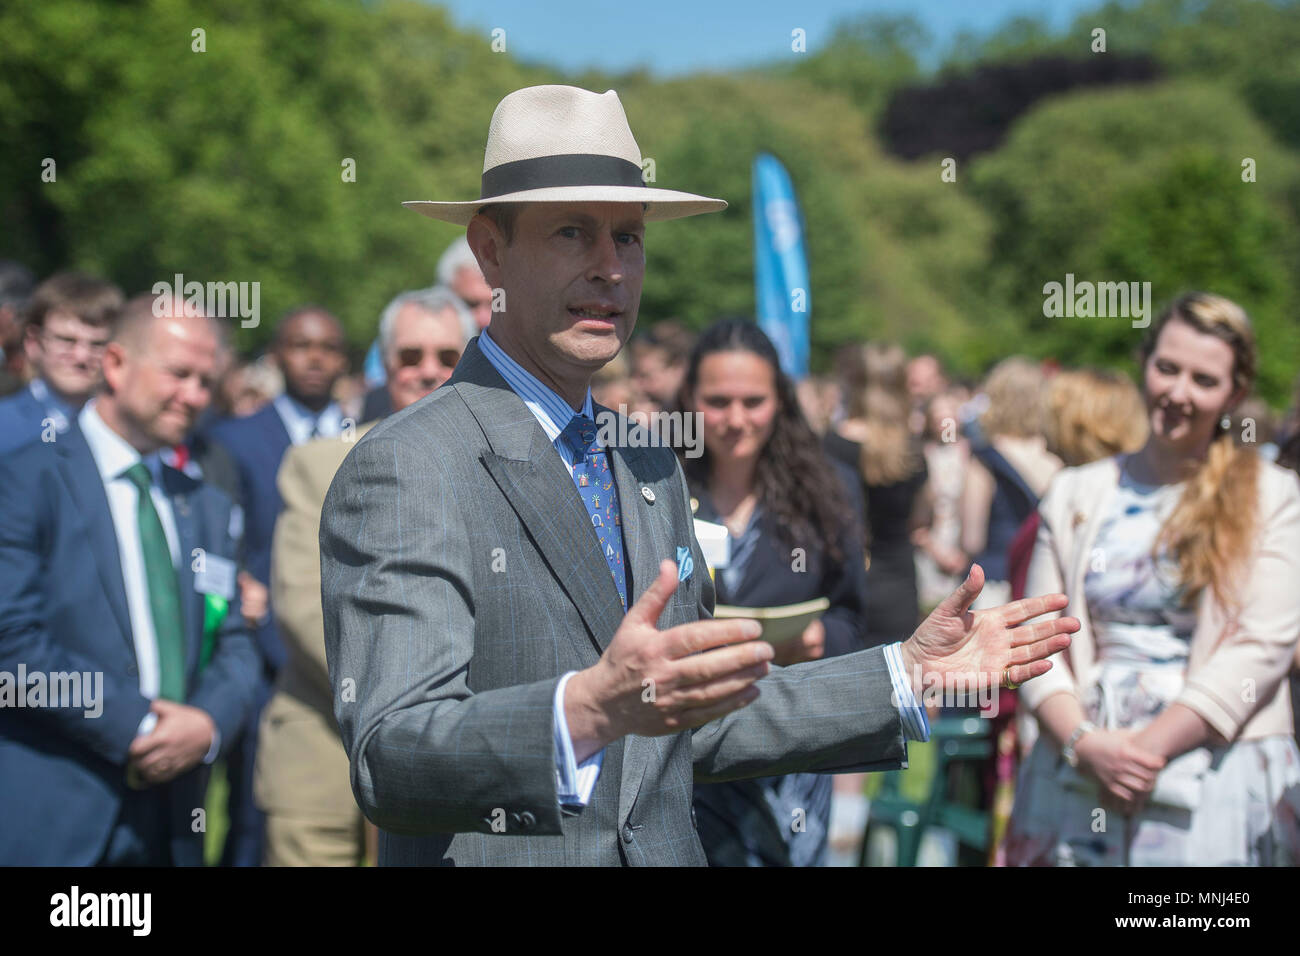 Der Graf von Wessex trifft die jungen Menschen, die ihr Gold Awards während einer Zeremonie für den Duke of Edinburgh's Award an die Gärten des Buckingham Palace in London erreicht haben. Stockfoto